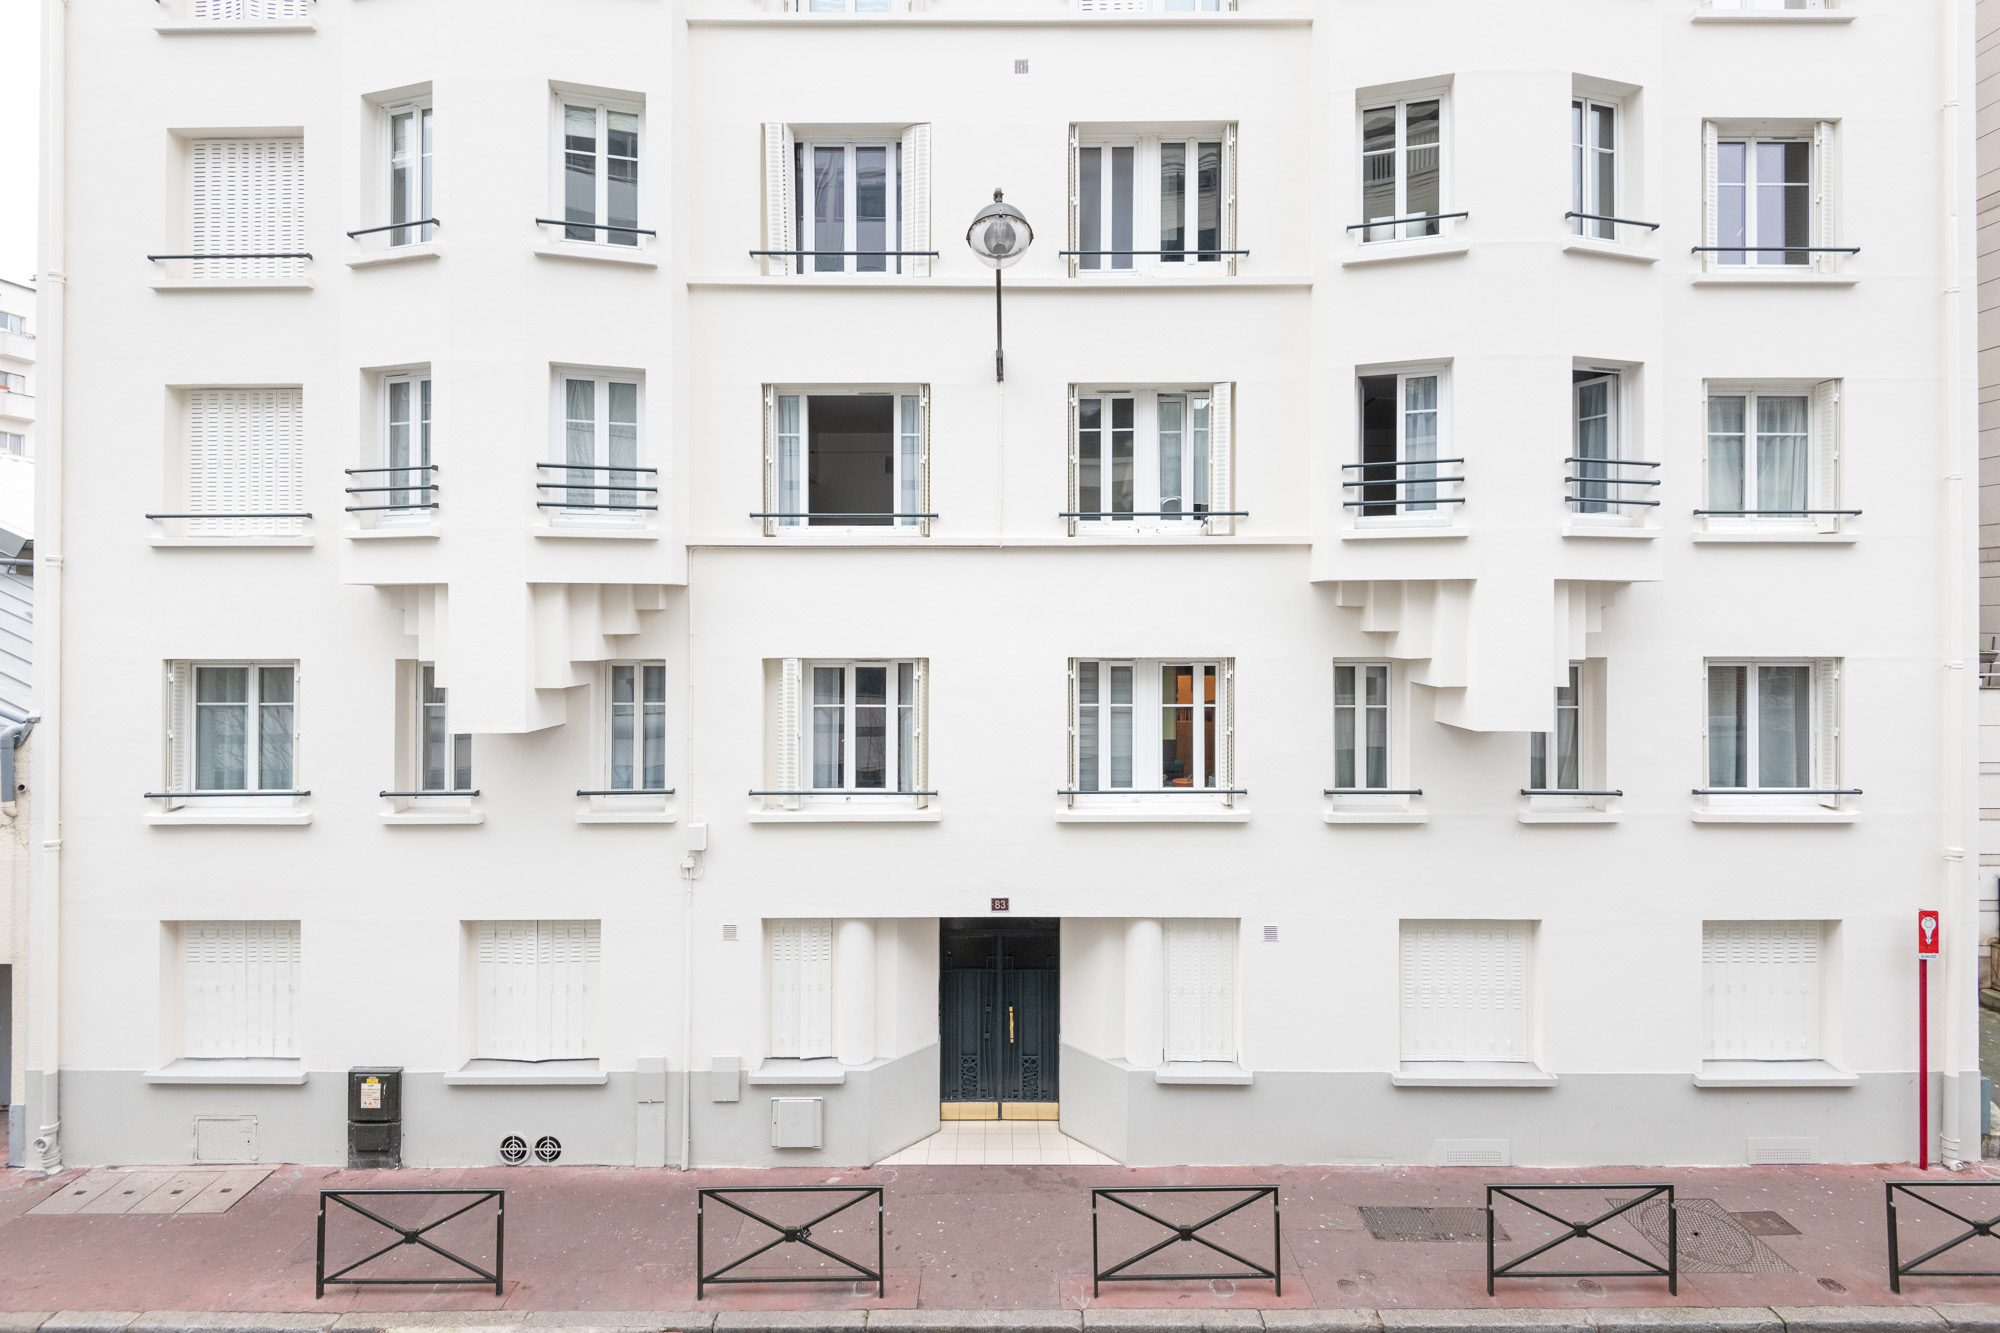 Studio La Boetie Architecte
Ravalement de façade
83 Rue Rivay, Levallois-Perret
© Christophe Caudroy